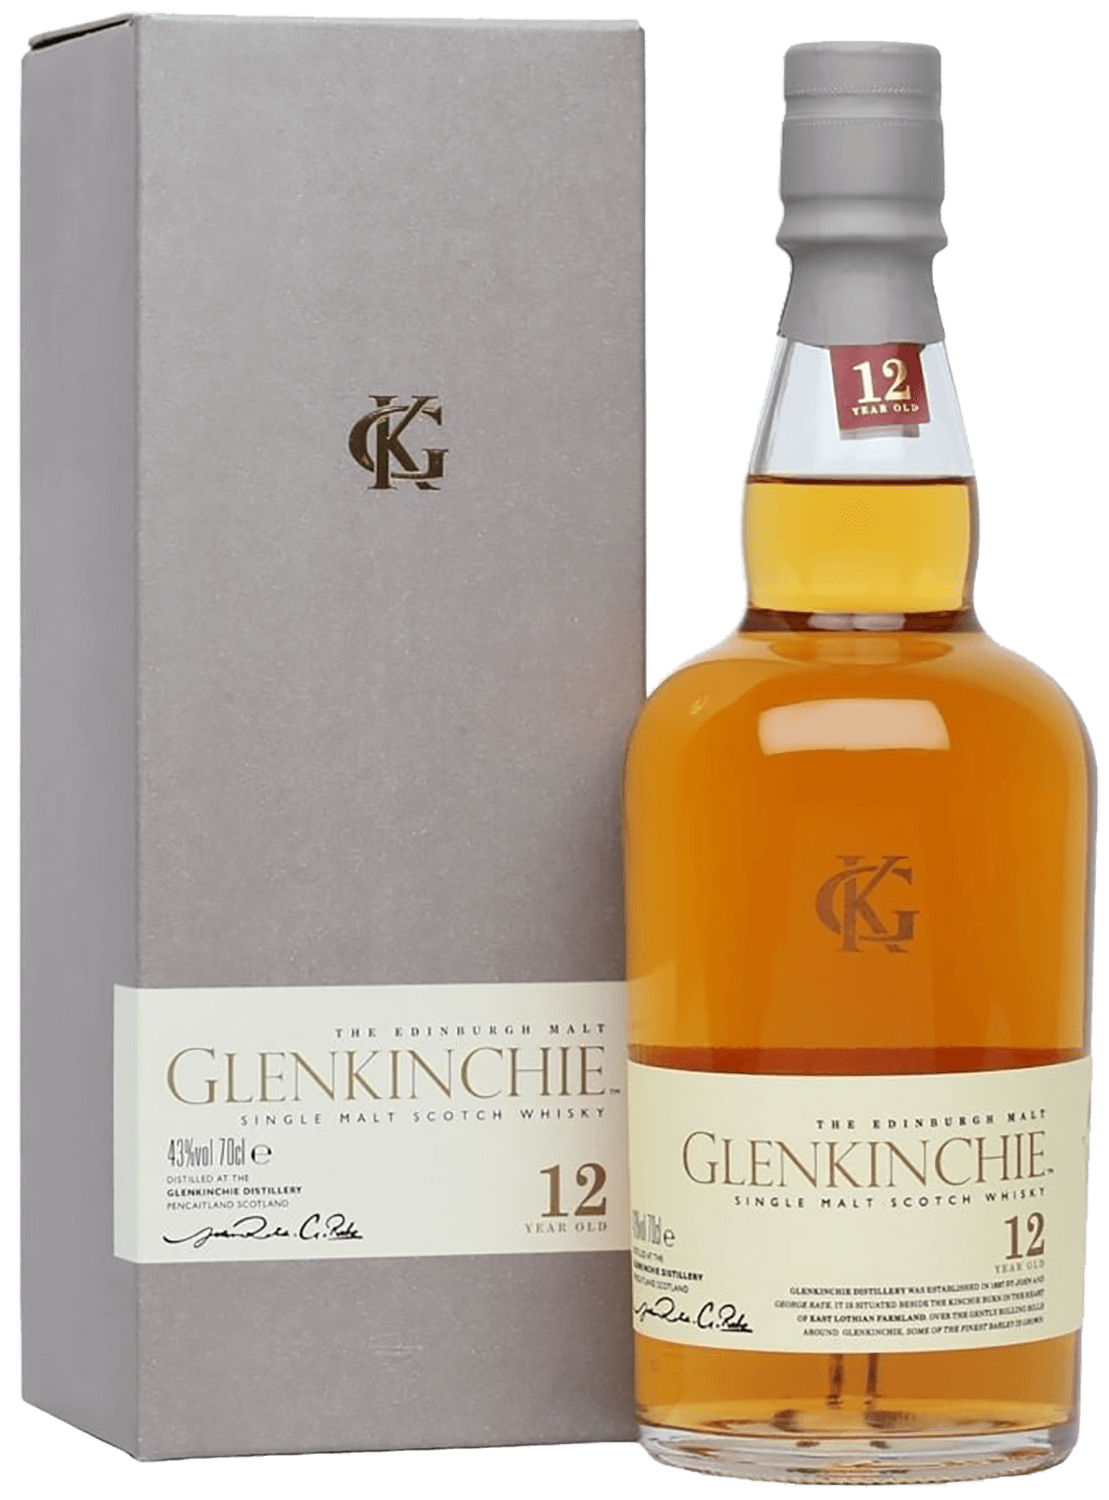 Glenkinchie 12 y.o. single malt scotch whisky (gift box) inchmoan 12 y o single malt scotch whisky gift box